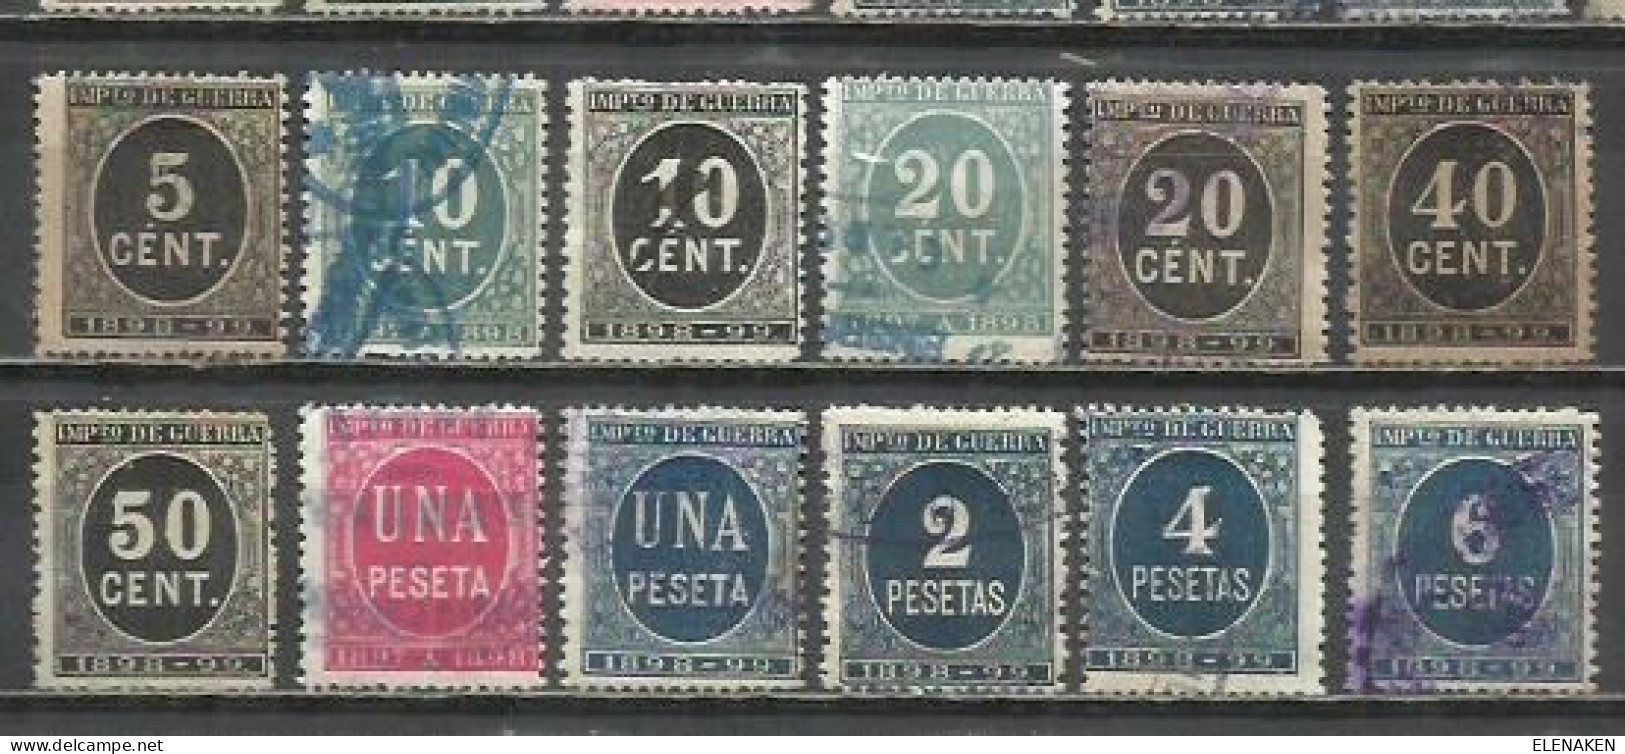 8527E- LOTE SELLOS IMPUESTO GUERRA 1898-1899 WAR TAX 114,00€ EDIFIL ALEMANY. SPAIN REVENUE. - Kriegssteuermarken